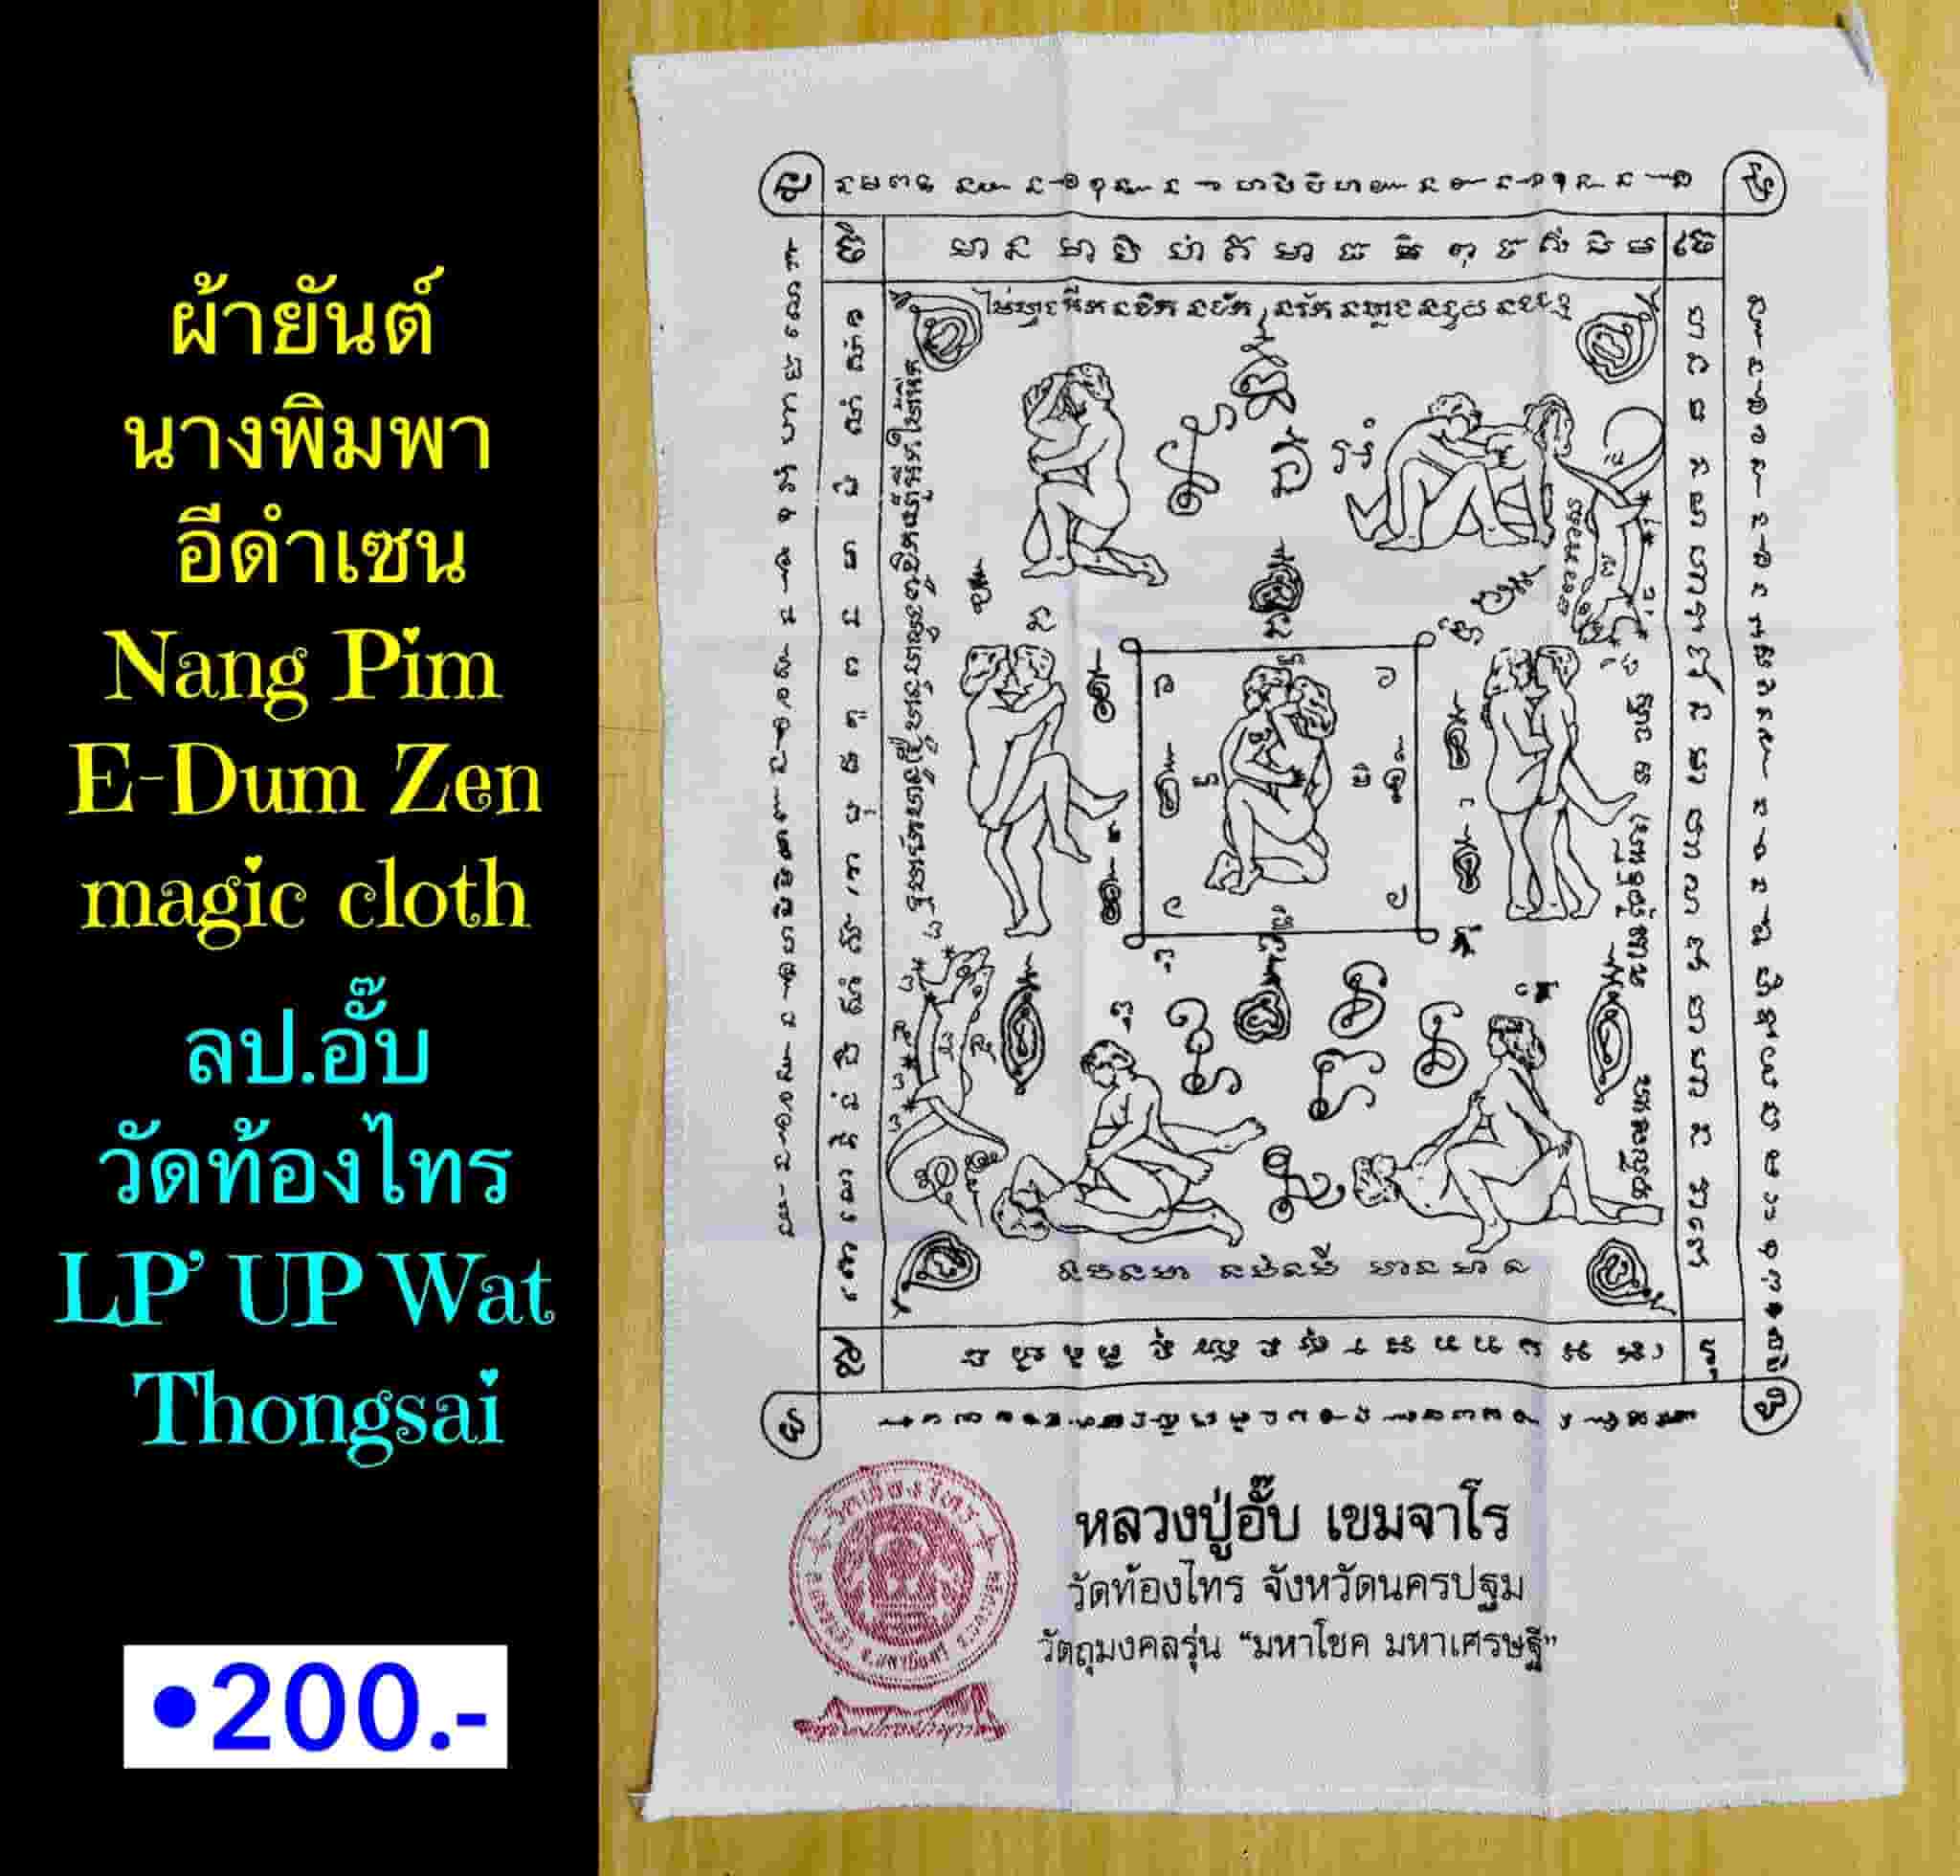 Nang Pim E-Dum Zen magic cloth by LP.UP Wat Thongsai, Nakhon Pathom province. - คลิกที่นี่เพื่อดูรูปภาพใหญ่